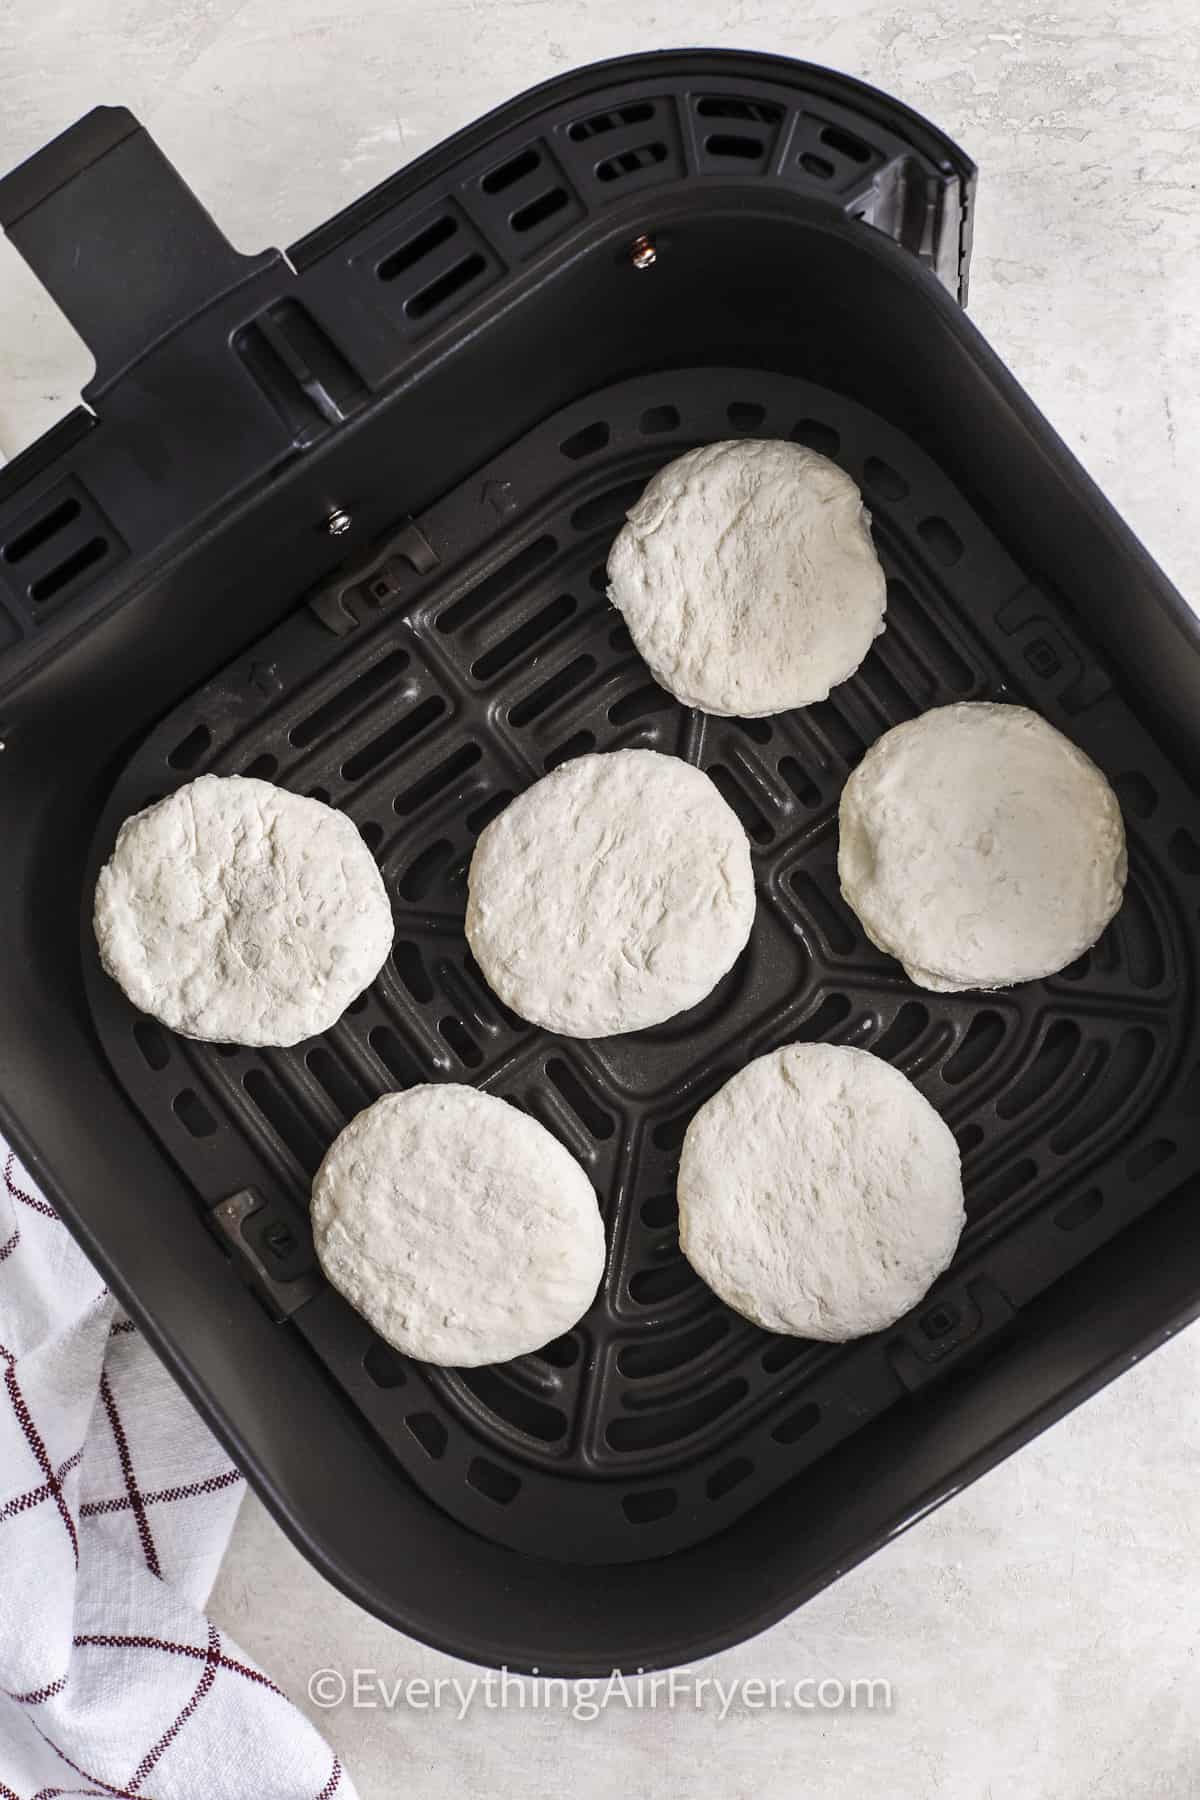 Frozen biscuits in an air fryer basket